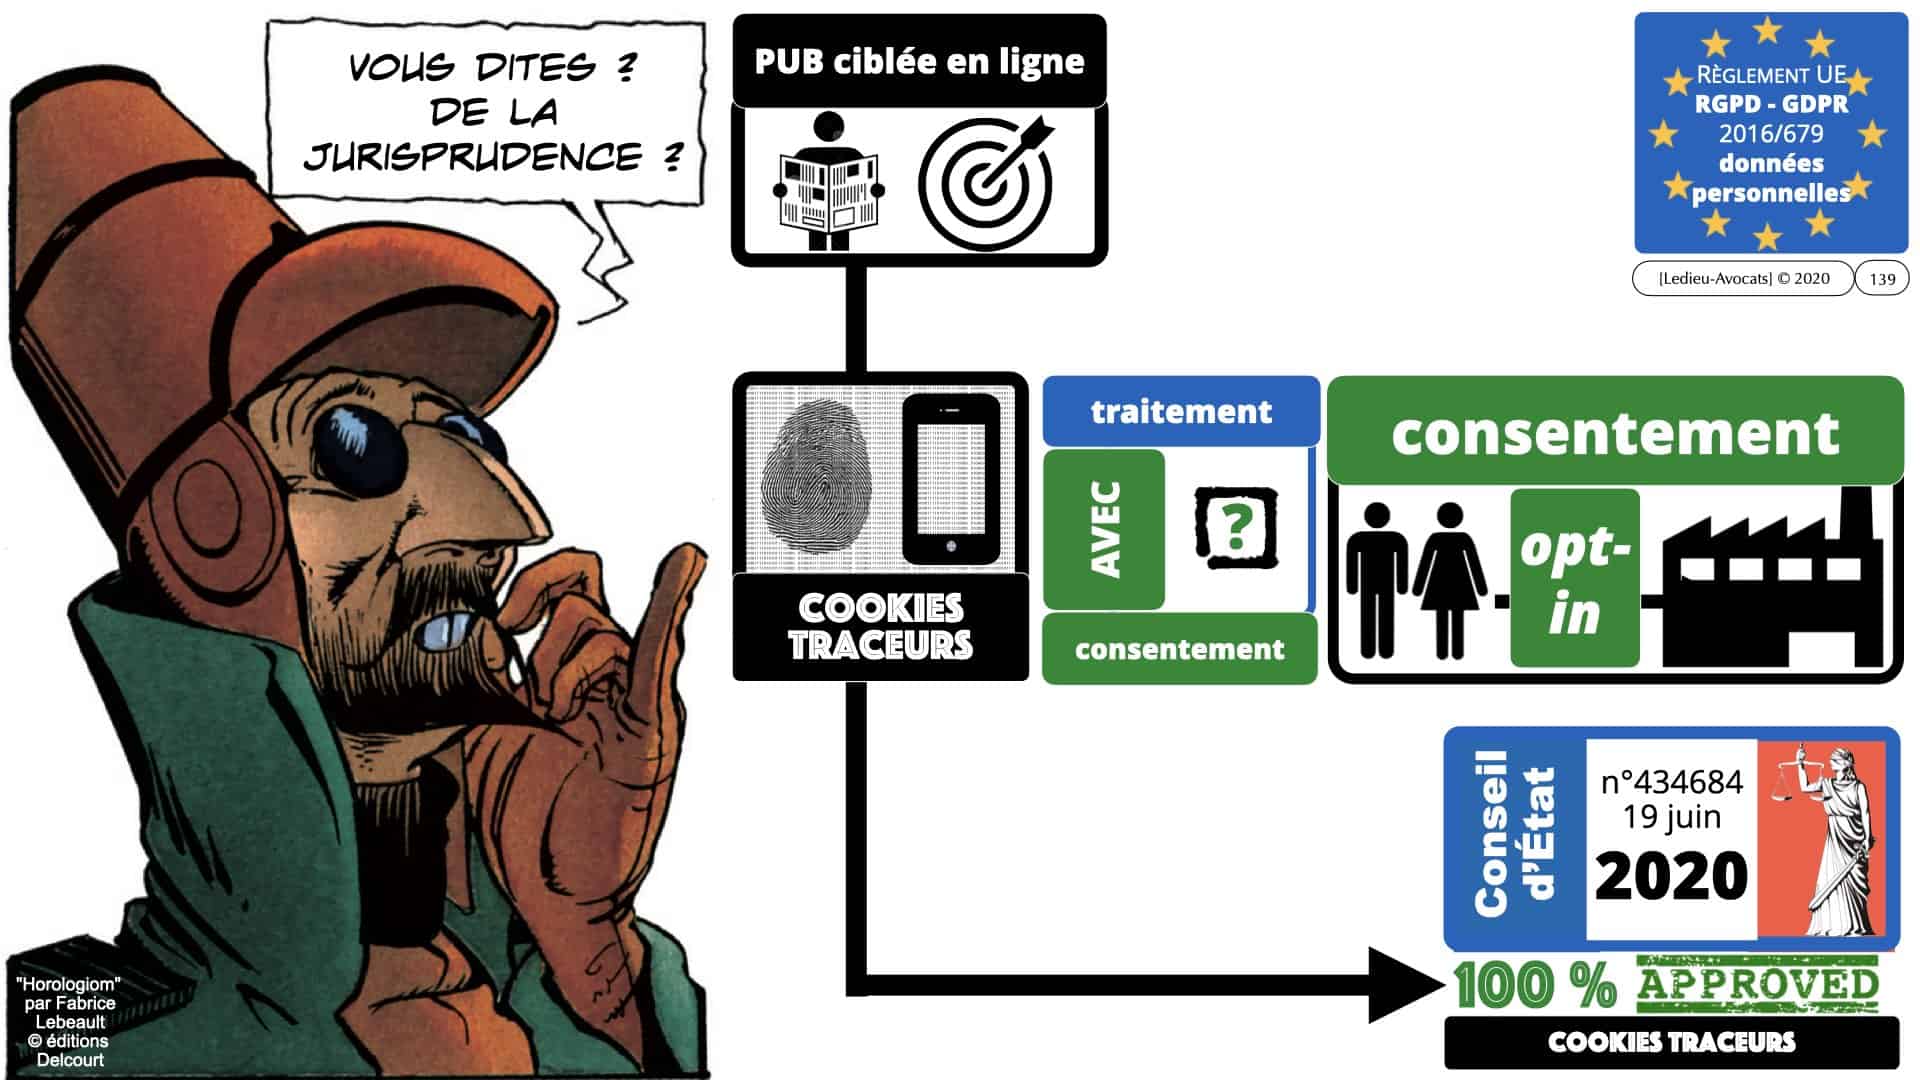 RGPD e-Privacy données personnelles jurisprudence formation Lamy Les Echos 10-02-2021 ©Ledieu-Avocats.139